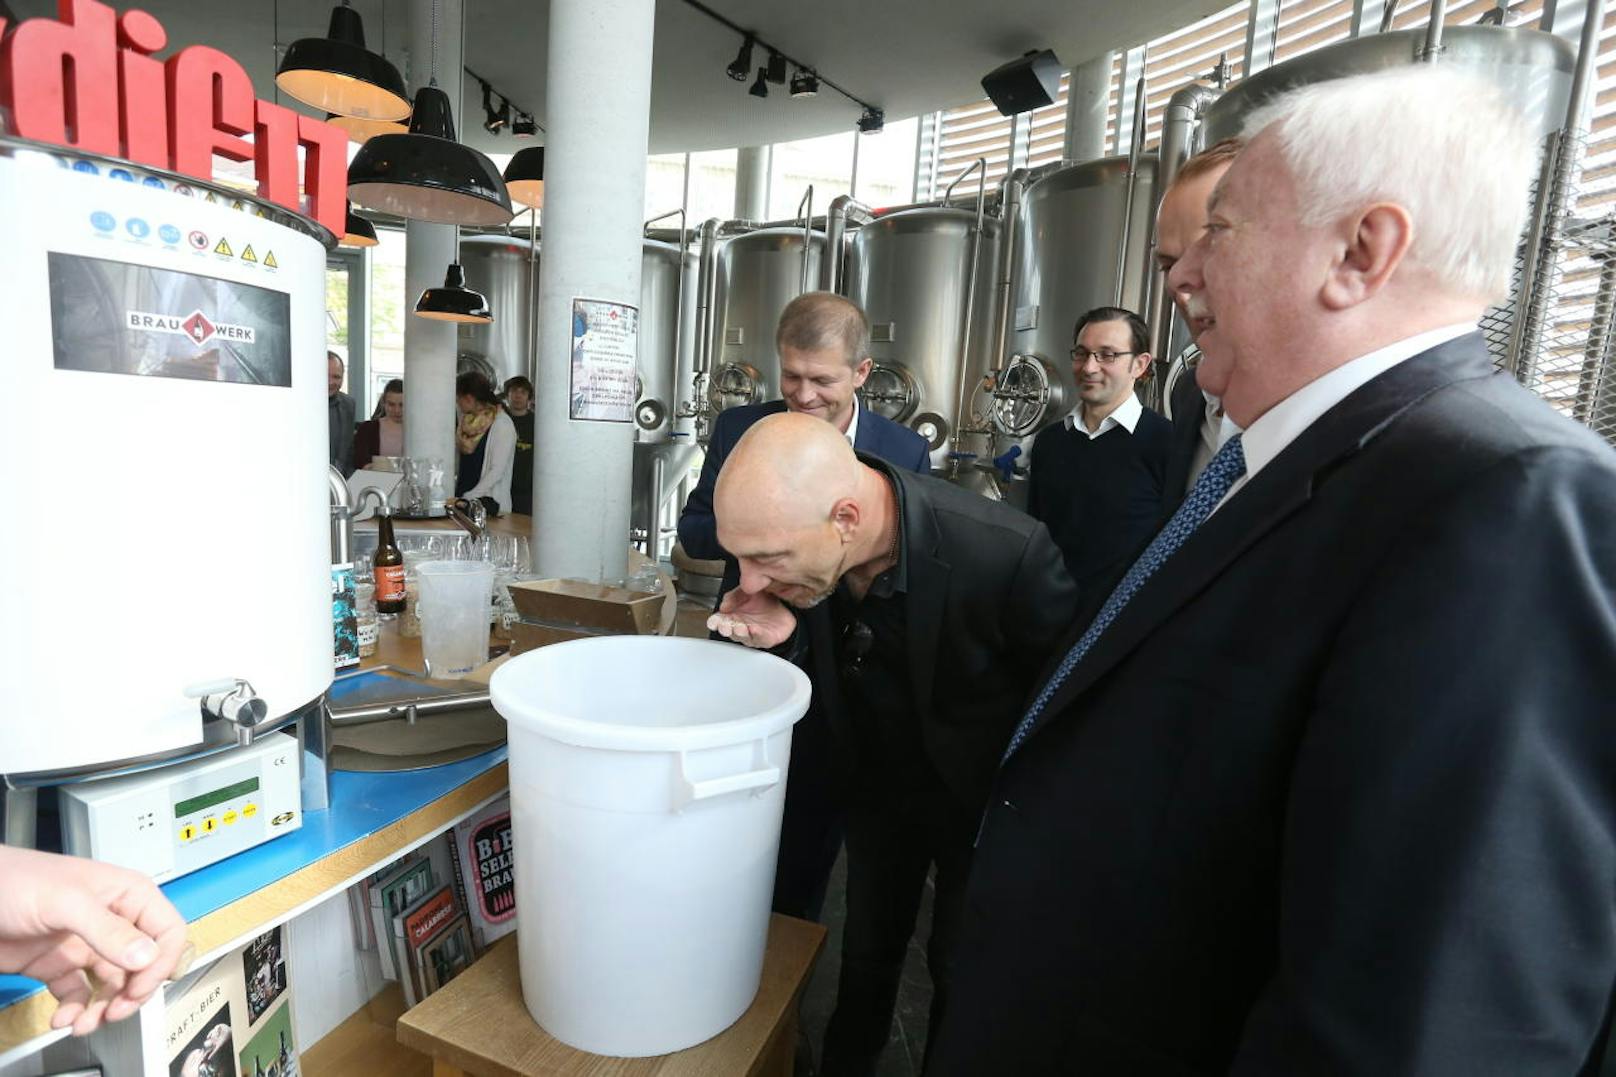 Sänger Roman Gregory und Bürgermeister Michael Häupl beim Einmaischen. Heuer gibt's zum dritten Mal ein eigenes Donauinselfest-Bier von der Ottakringer Brauerei.